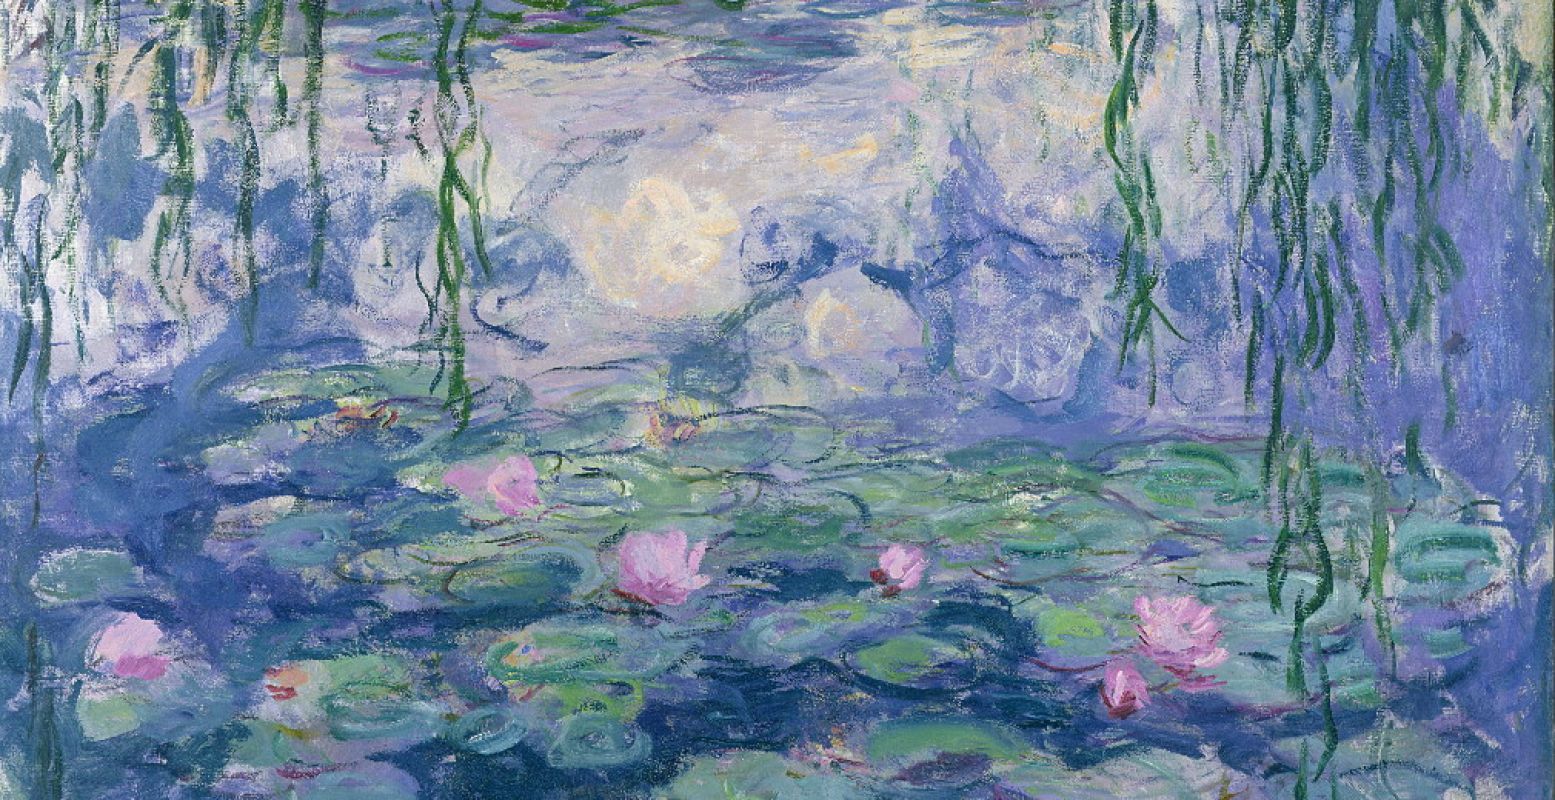 Claude Monet (1840-1926), Waterlelies, 1916-1919, olieverf op doek, 150 x 197 cm, Musée Marmottan. Foto: Kunstmuseum Den Haag